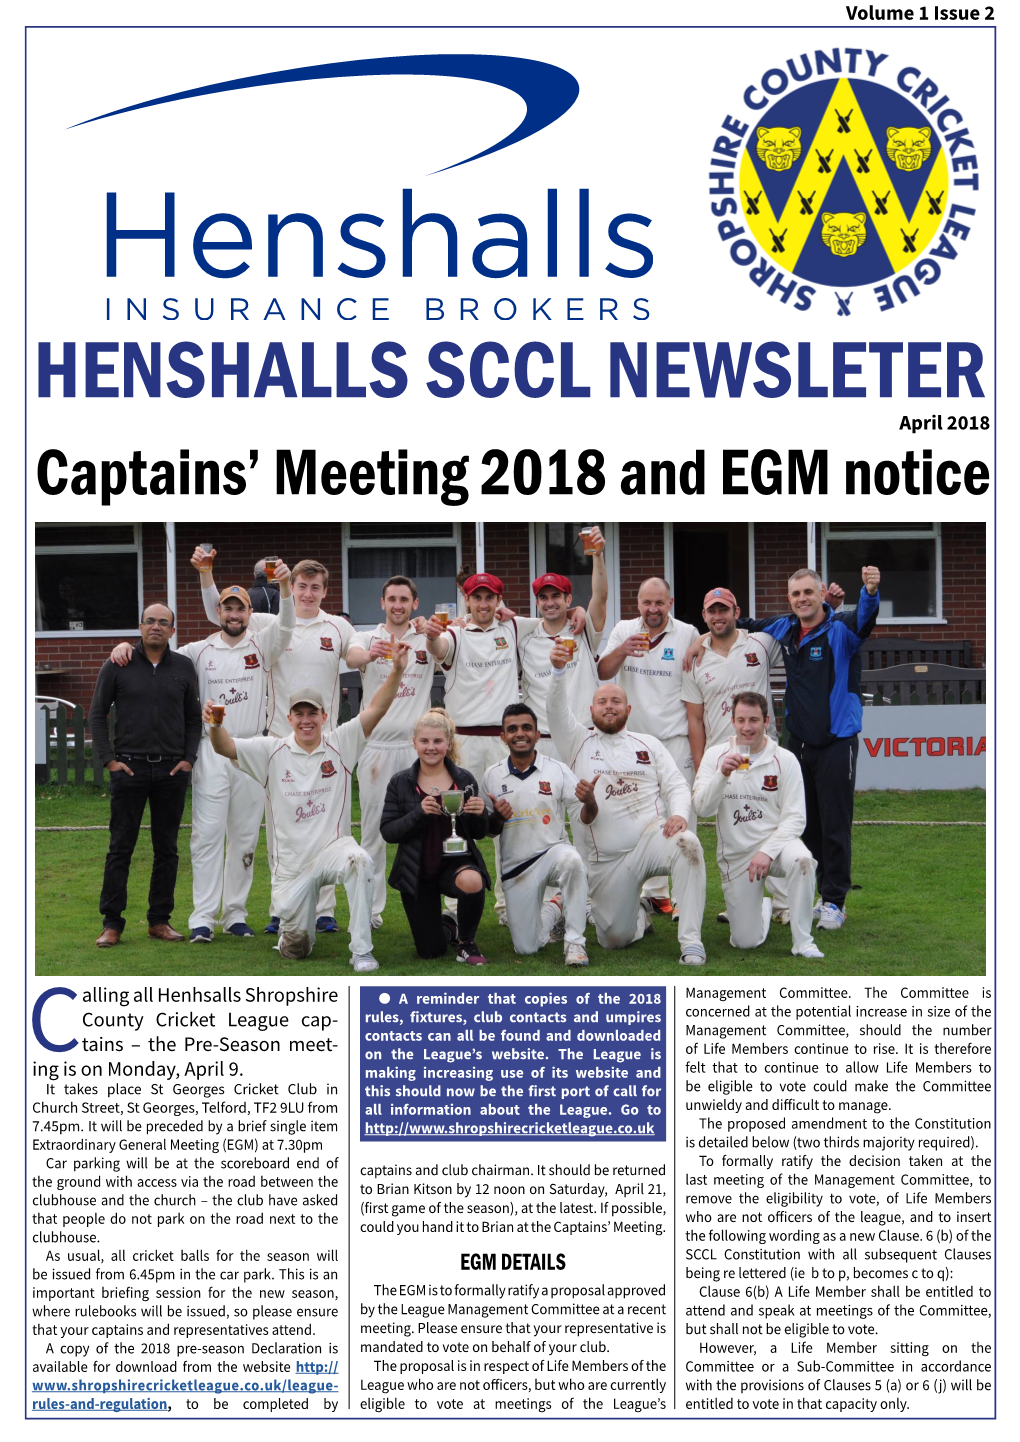 HENSHALLS SCCL NEWSLETER April 2018 Captains’ Meeting 2018 and EGM Notice